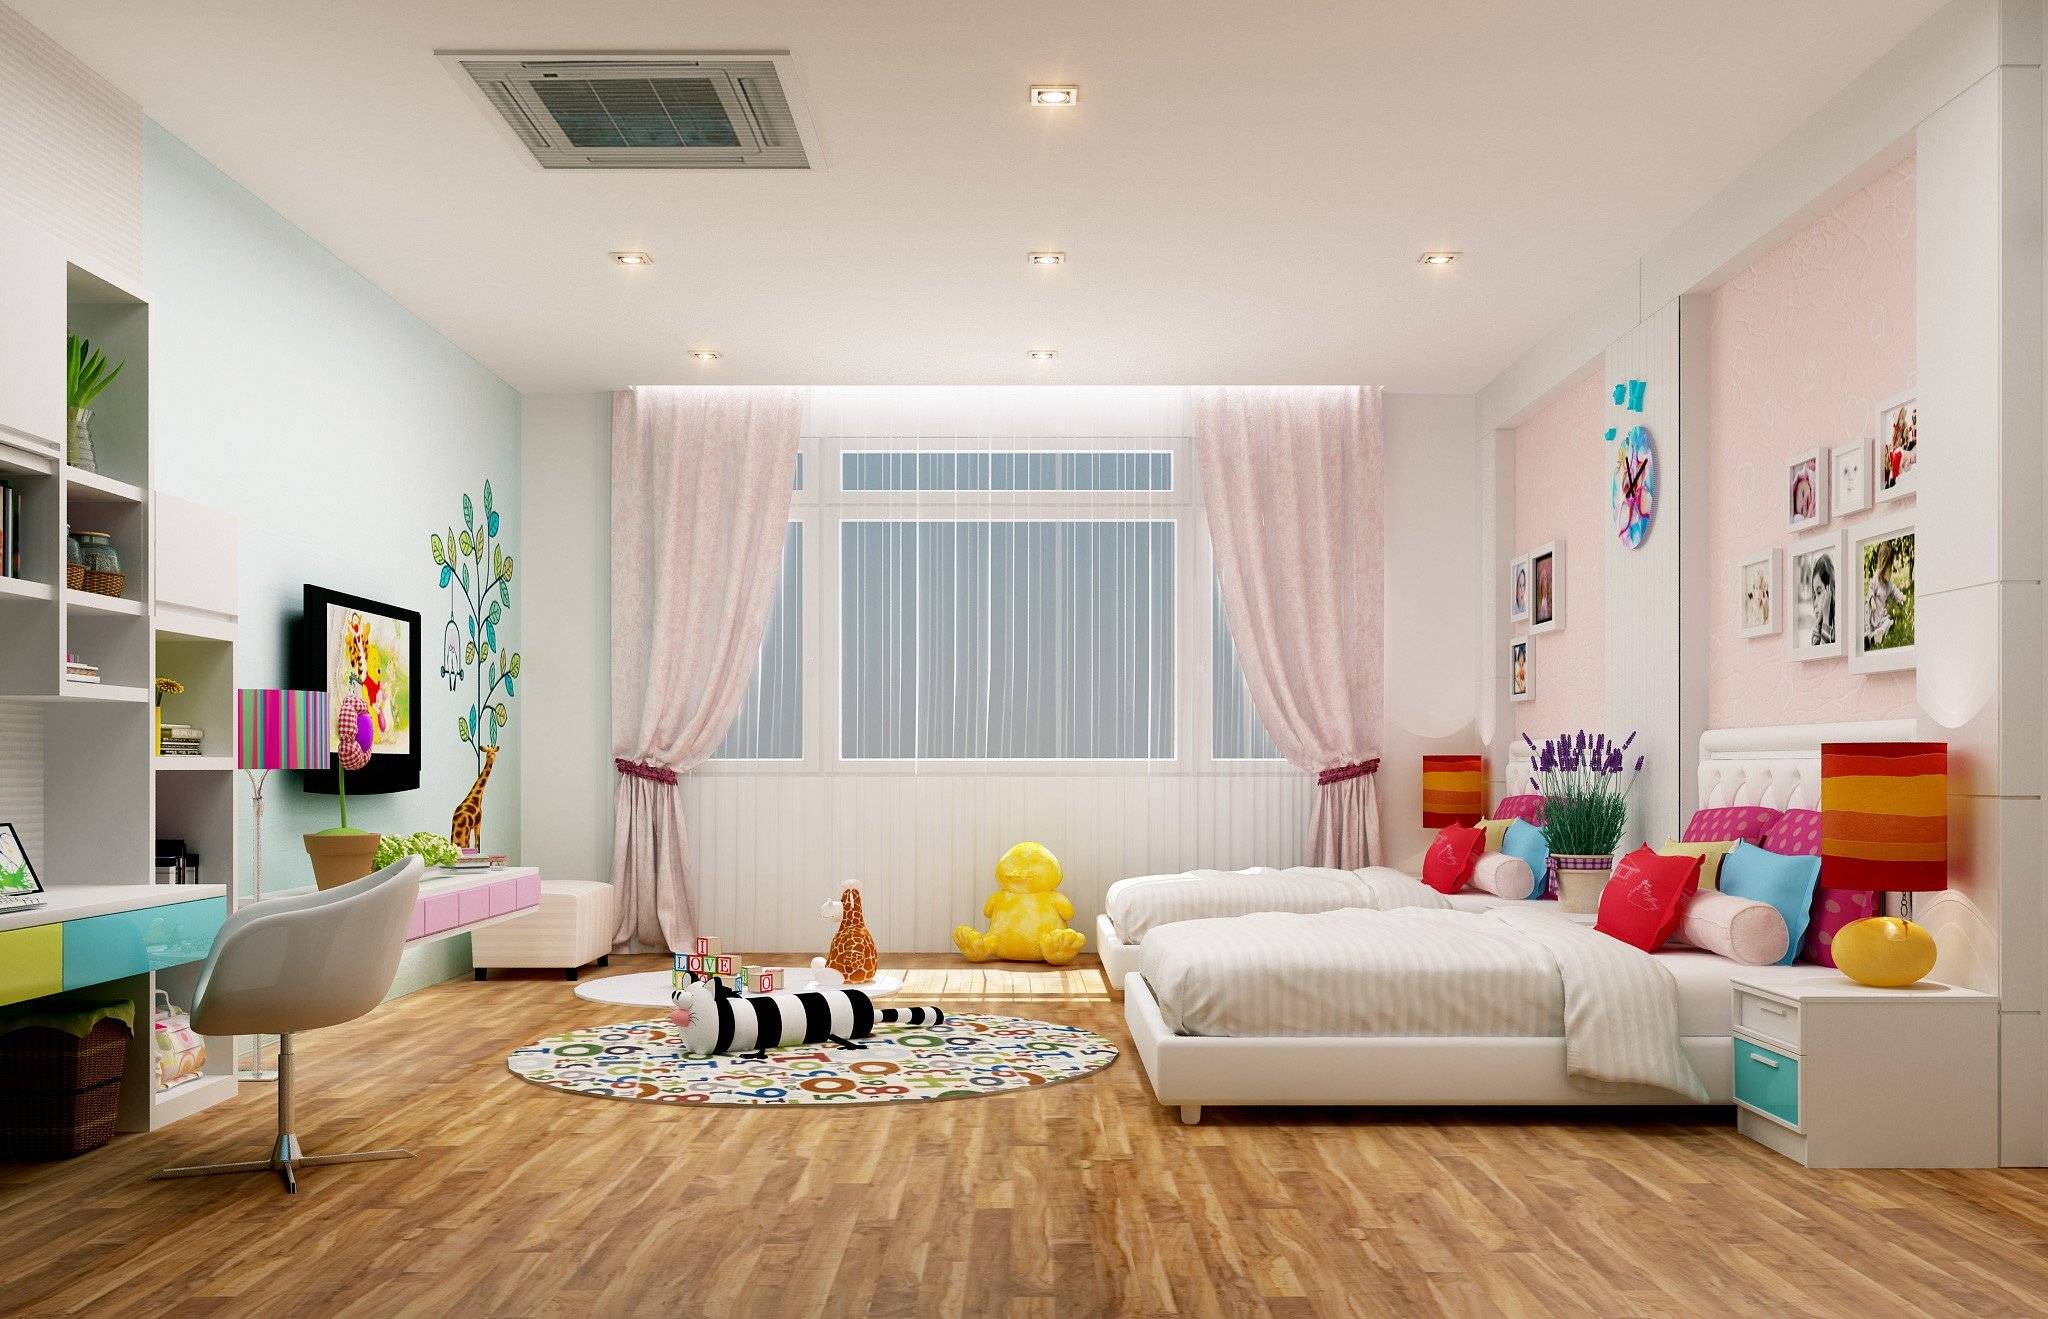 Современное освещение в детской комнате - советы + фото в интерьере